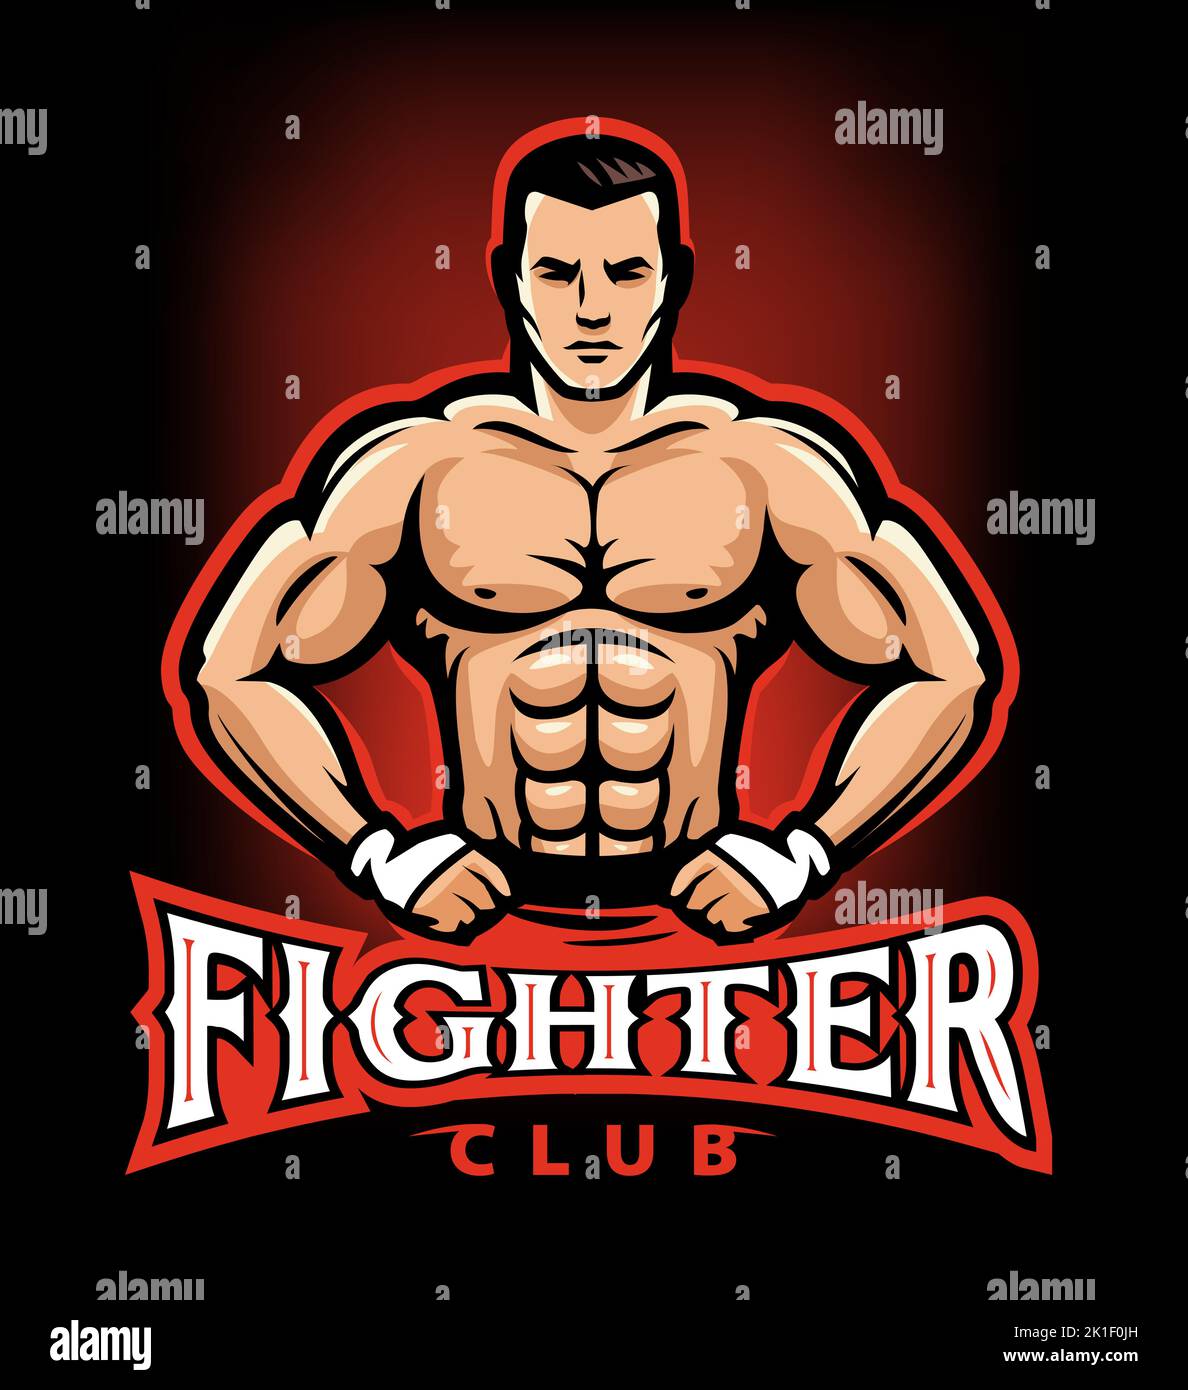 MMA luchador muscular con guantes de boxeo. Logotipo del club de lucha. Ilustración vectorial emblema de artes marciales mixtas Ilustración del Vector